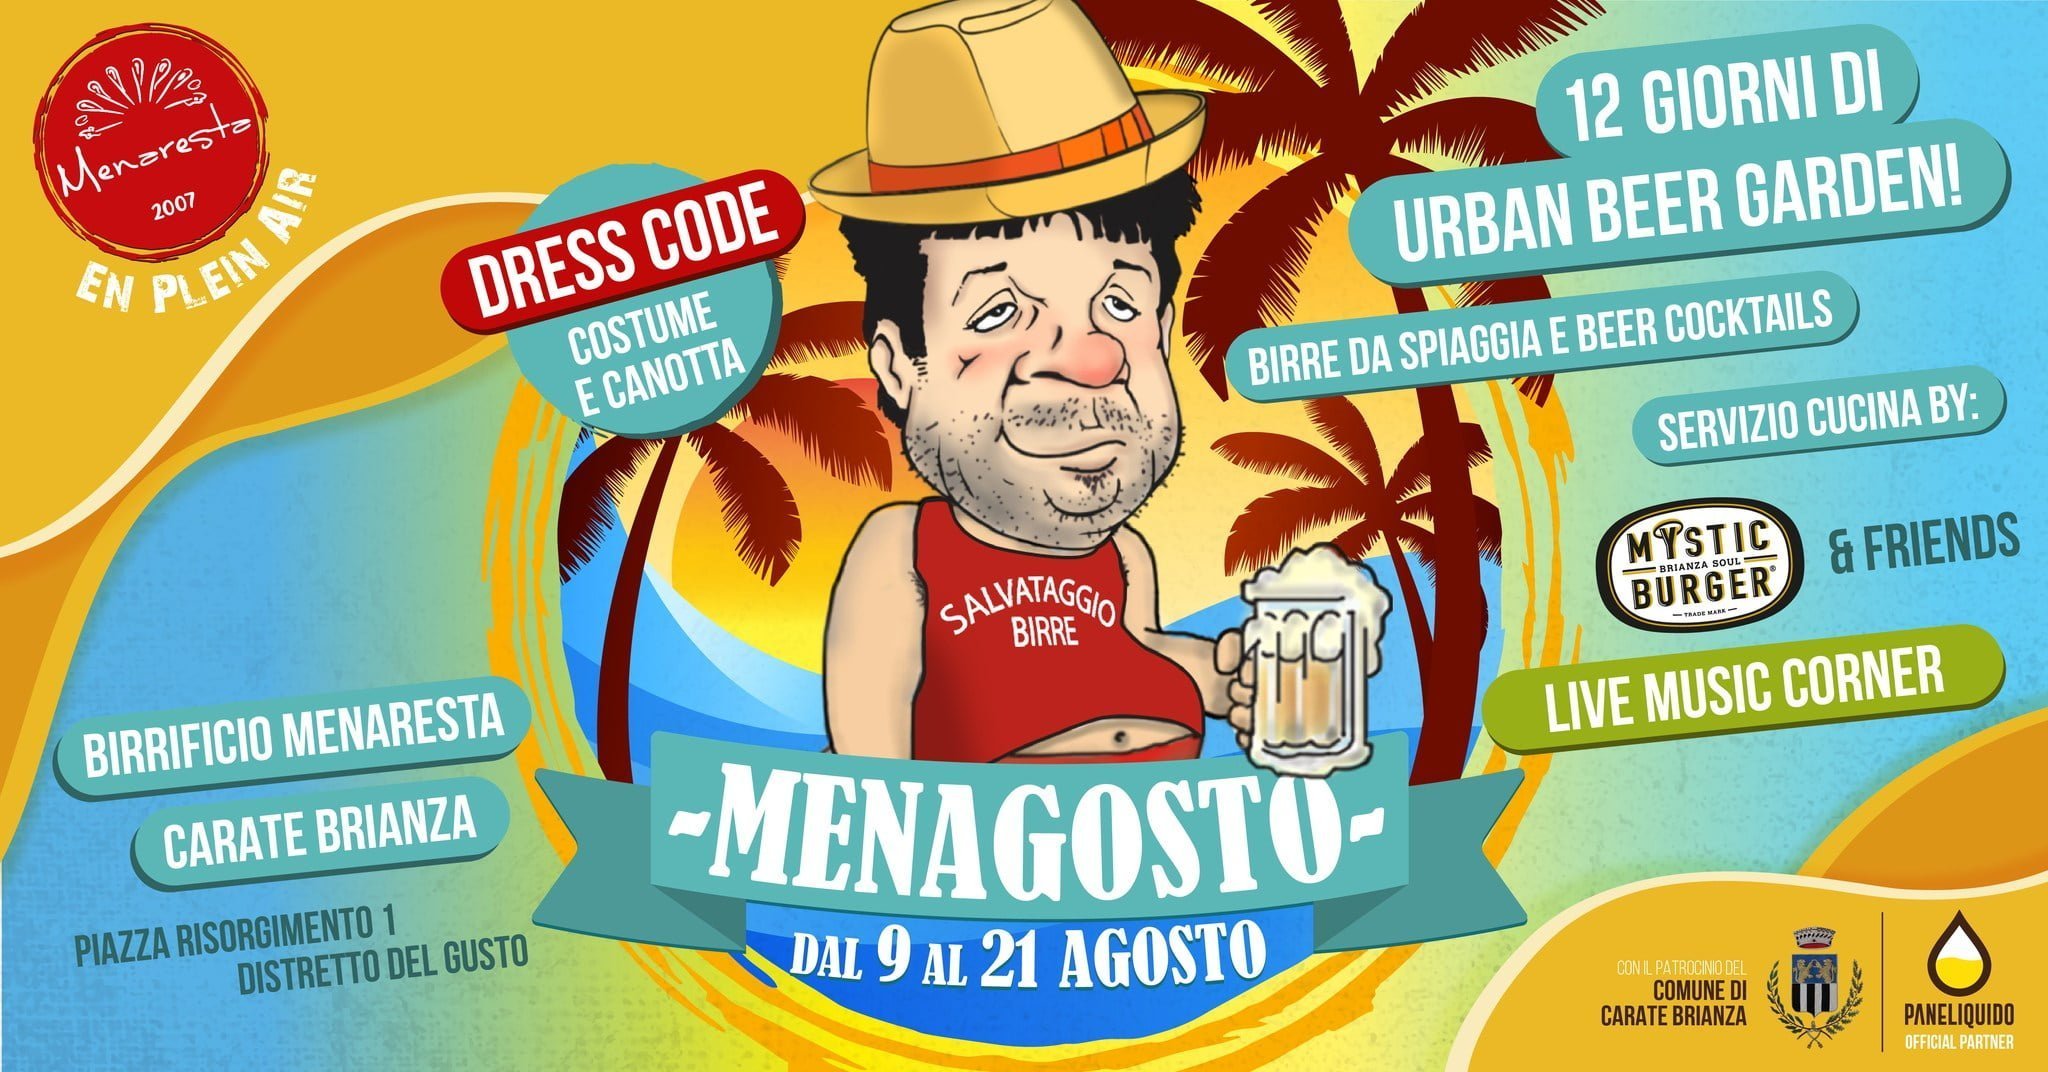 𝑴𝑬𝑵𝑨𝑮𝑶𝑺𝑻𝑶 Urban Beer Garden | Dal 9 Al 21 Agosto, Carate Brianza \ Birrificio Menaresta